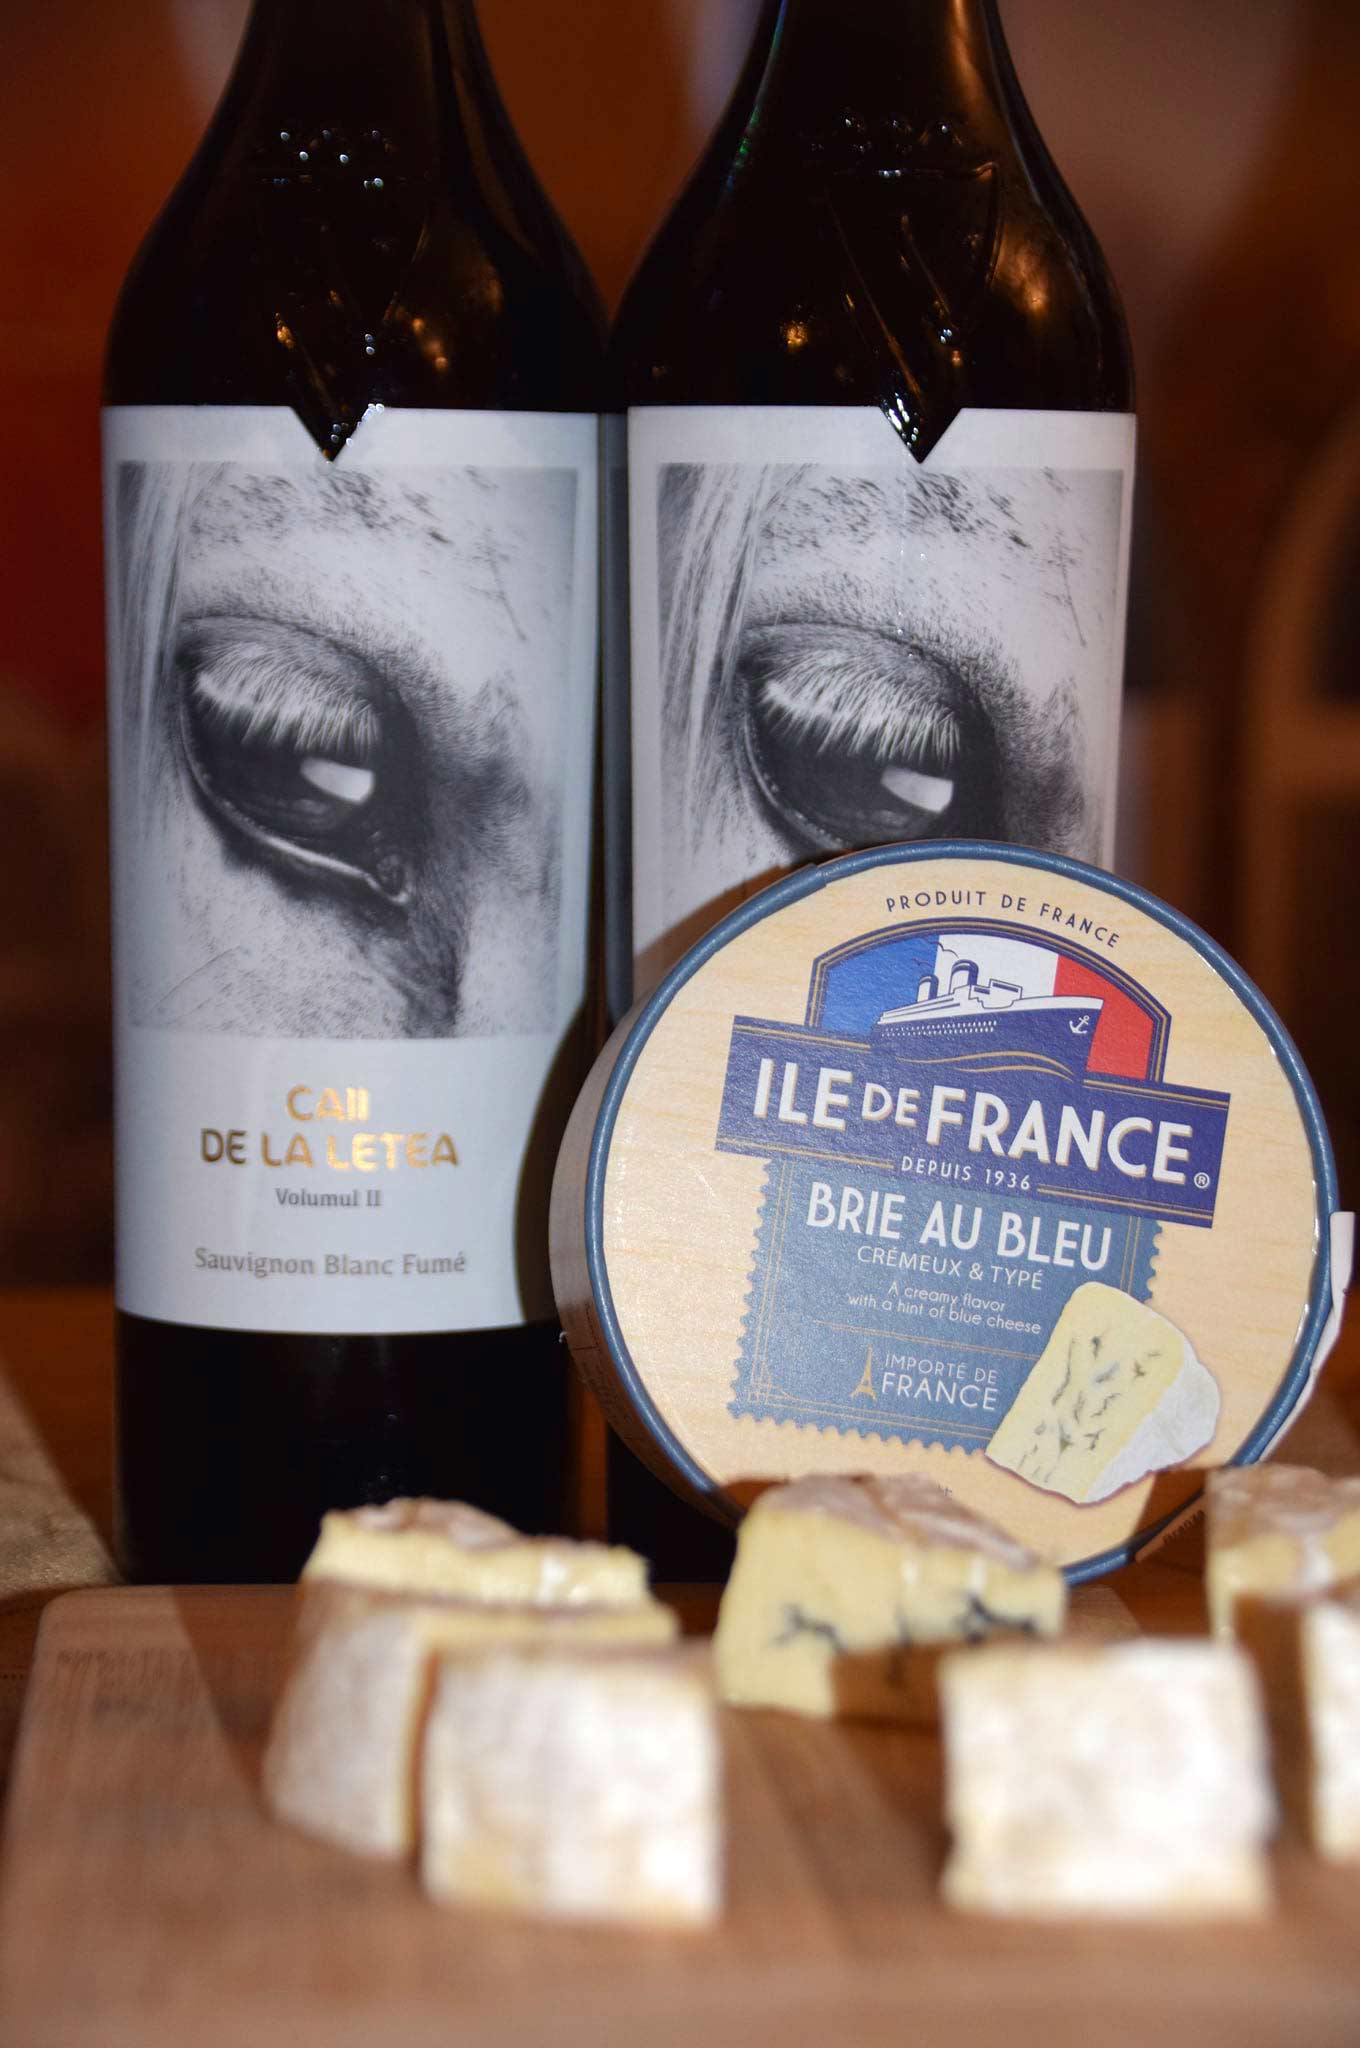 Sauvignon Blanc Fume vol II + Brie au bleu Île de France